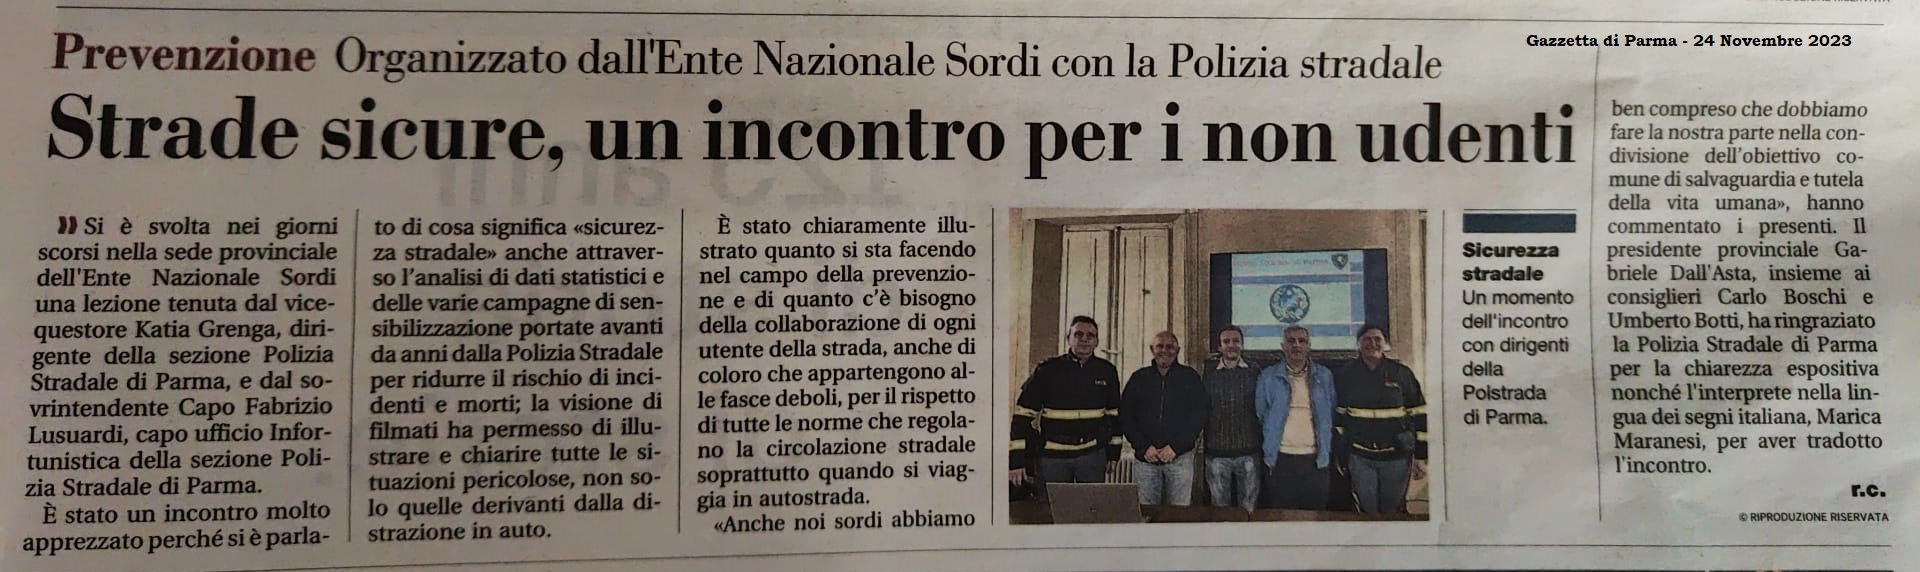 Articolo Gazzetta di Parma 24-11-23 Foto Giornale.jpg